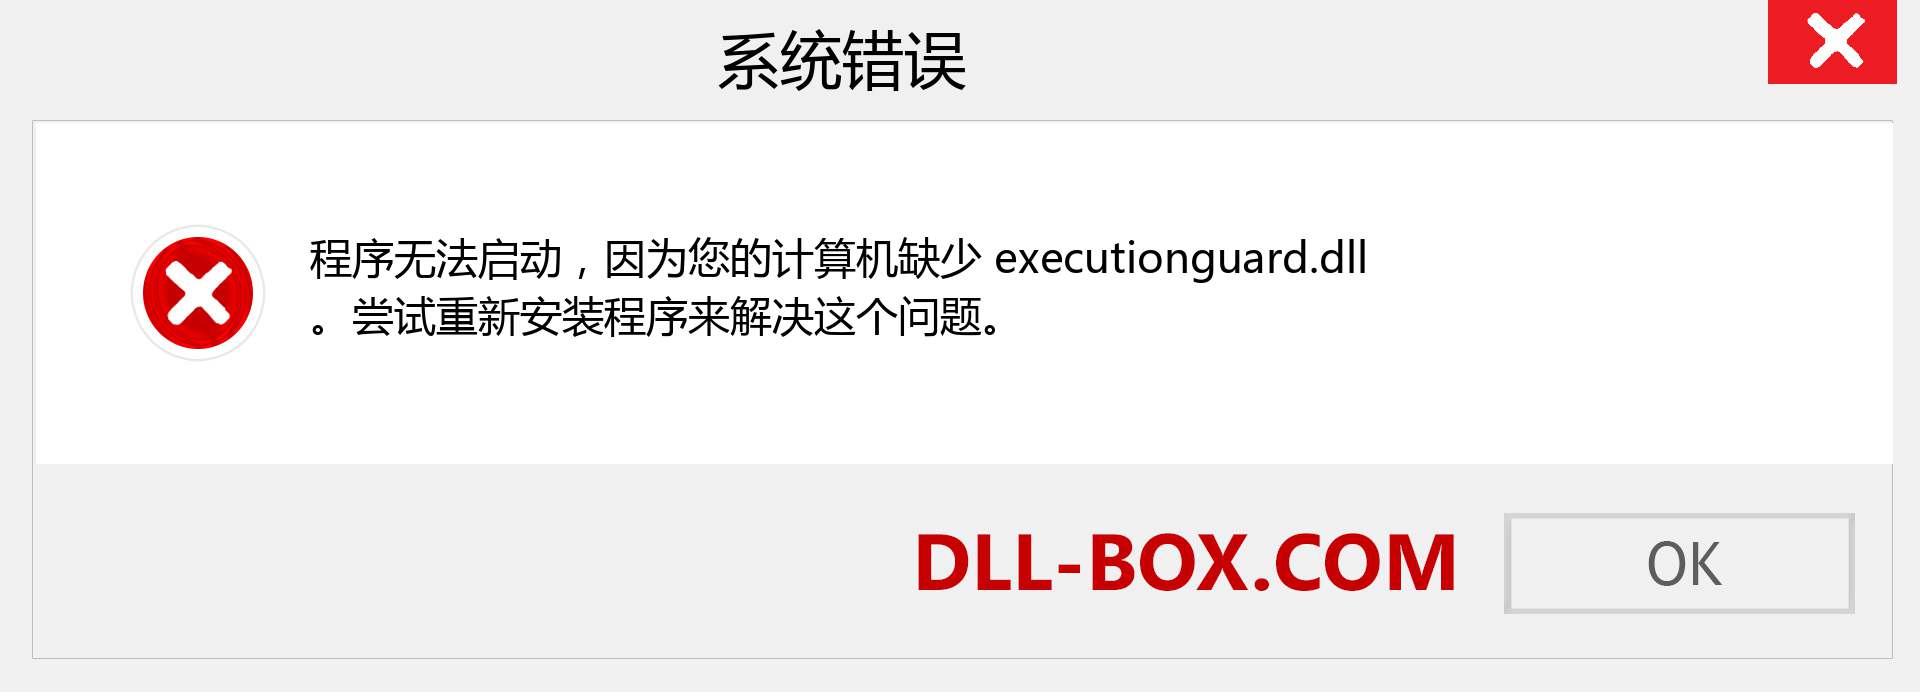 executionguard.dll 文件丢失？。 适用于 Windows 7、8、10 的下载 - 修复 Windows、照片、图像上的 executionguard dll 丢失错误